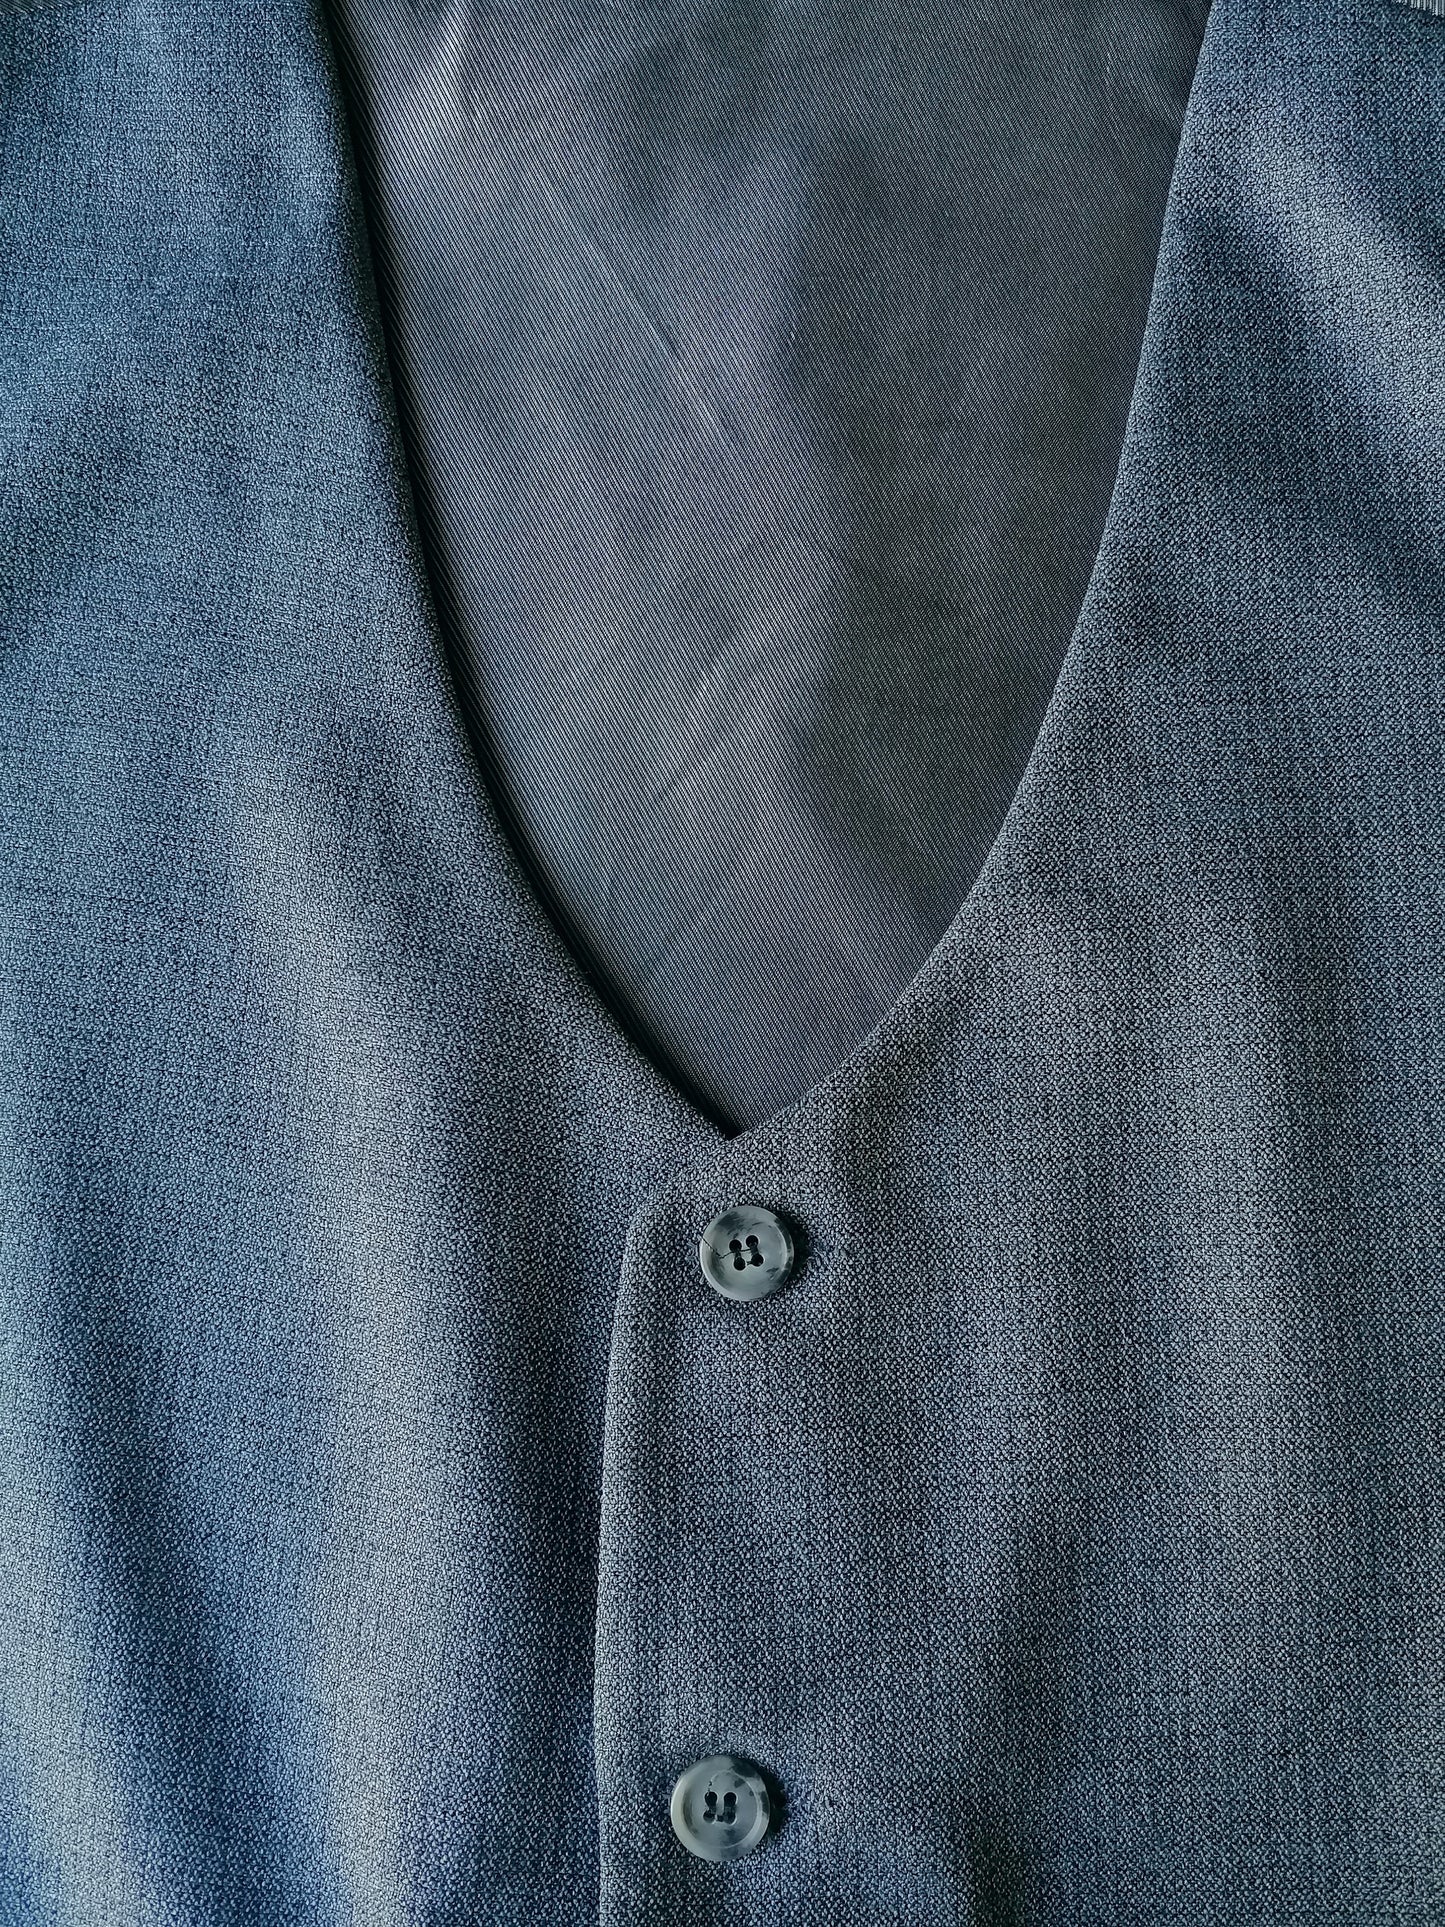 Waistcoat. Gray motif. Size S. #333